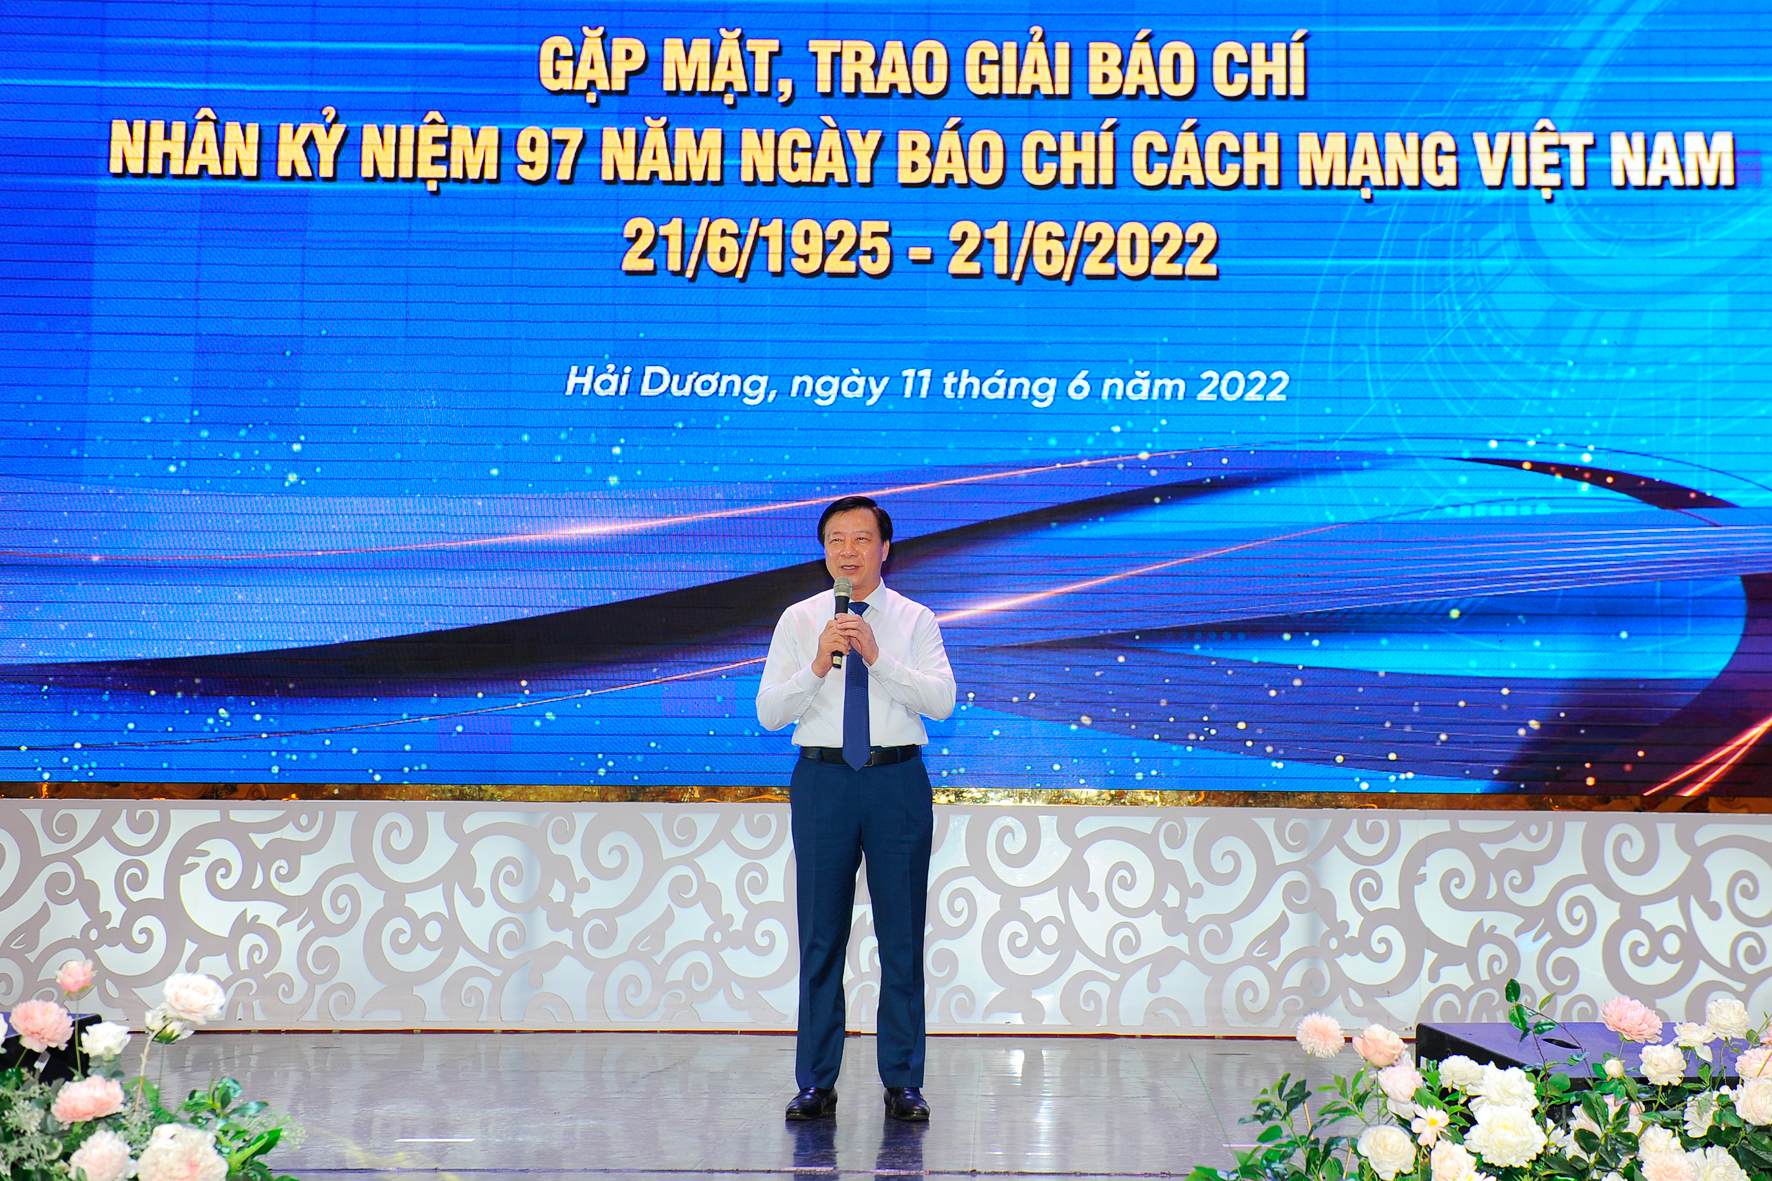 Bí thư Tỉnh ủy Hải Dương Phạm Xuân Thăng phát biểu tại buổi gặp mặt.